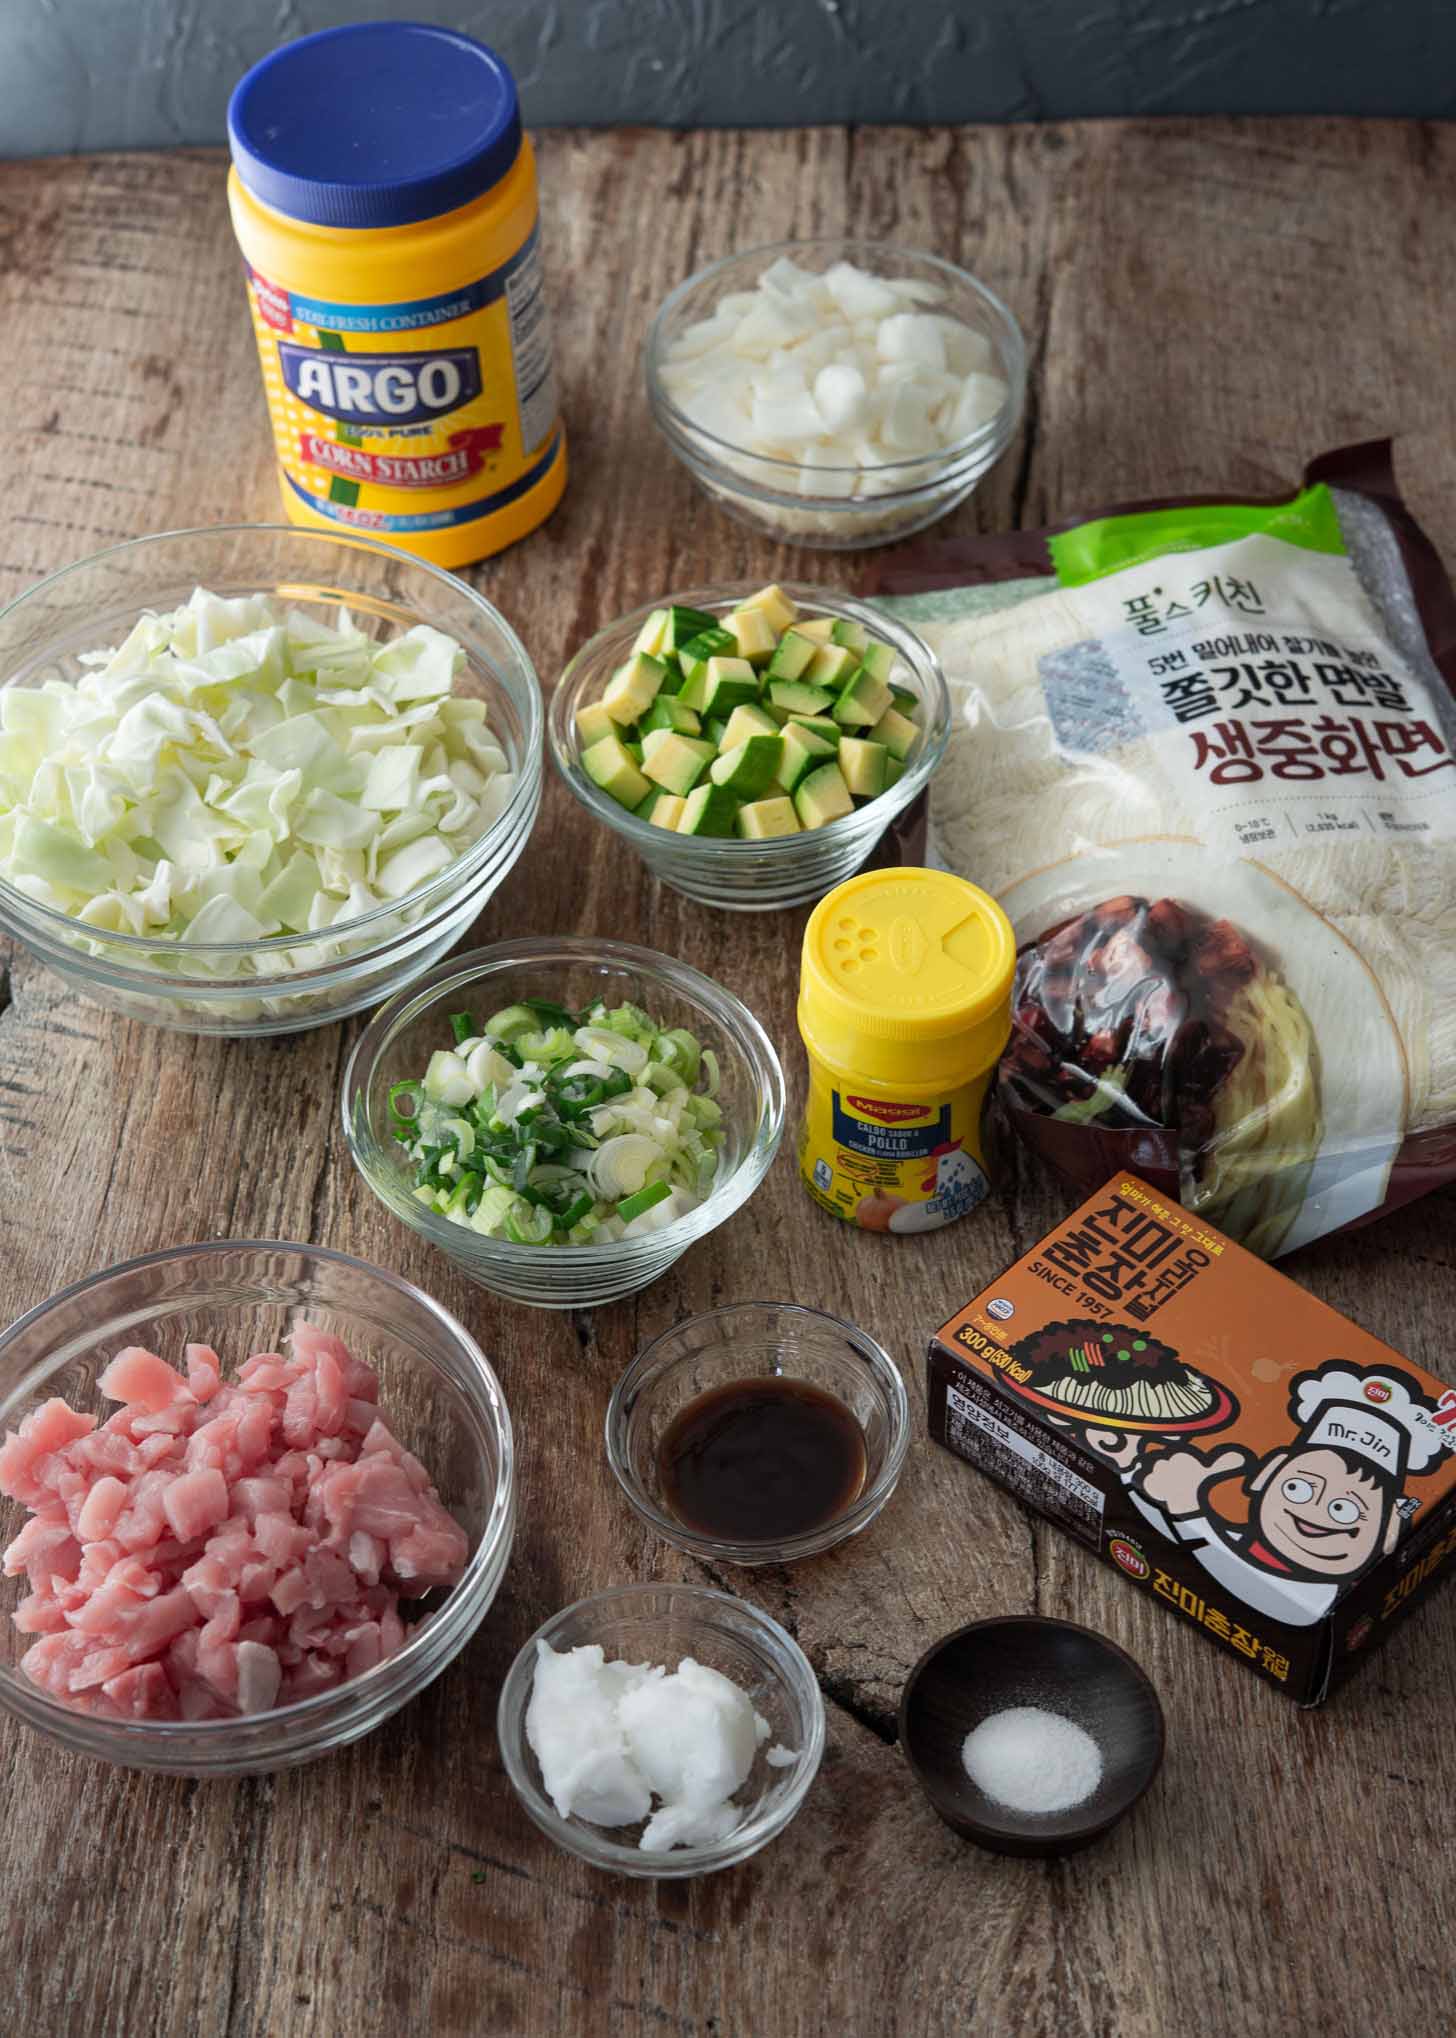 Ingredients for making jajangmyeon recipe.